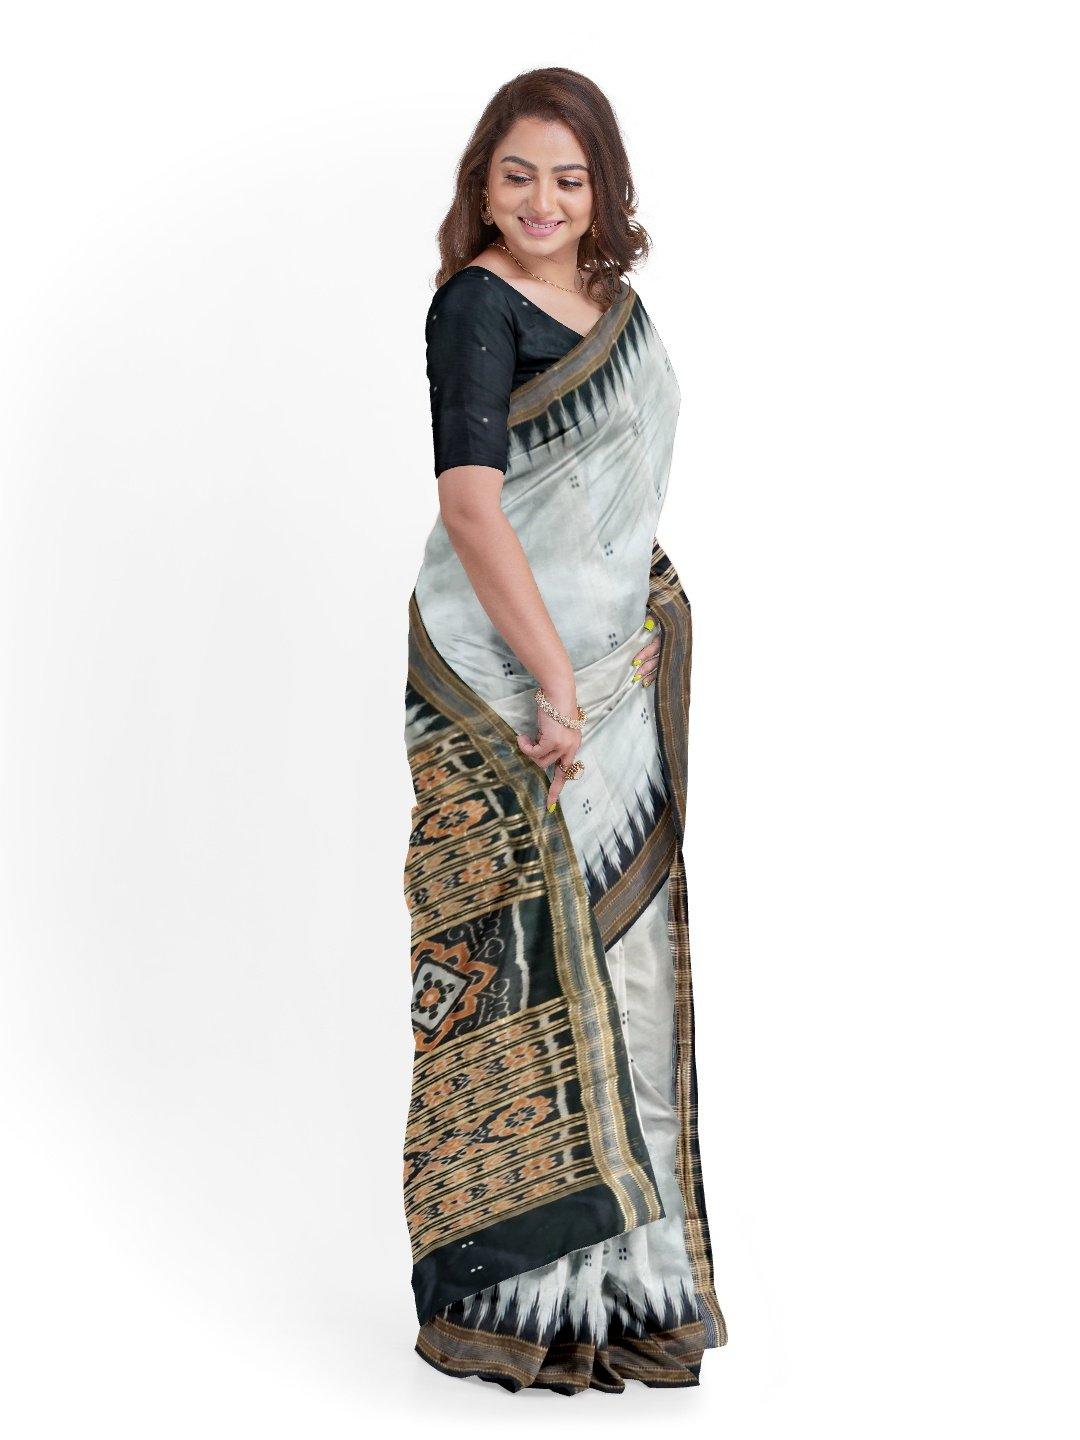 Grey Odisha Khandua Sambalpuri Silk Saree - Crafts Collection